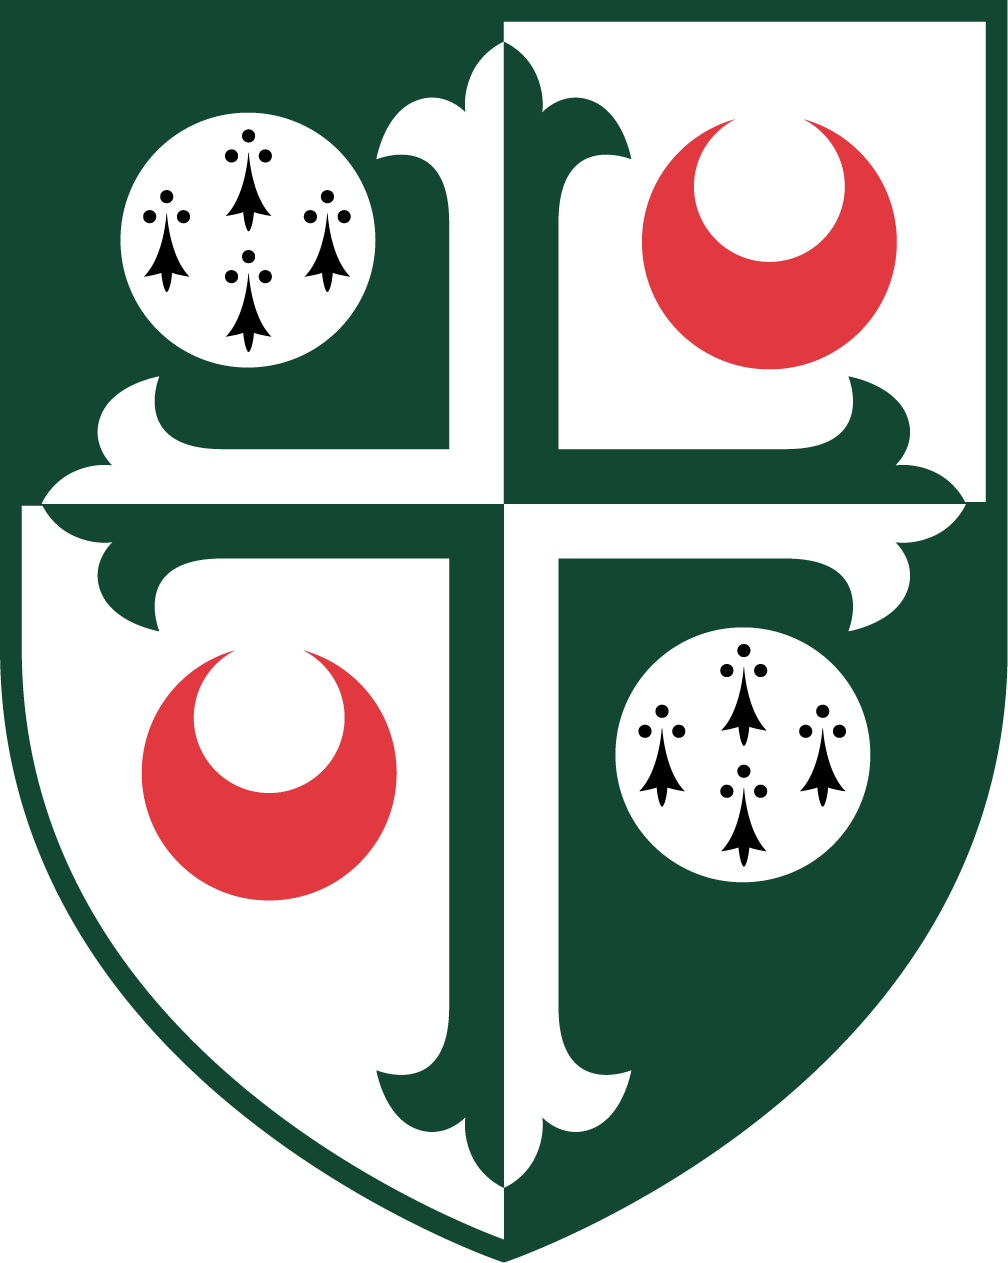 logo for Girton College